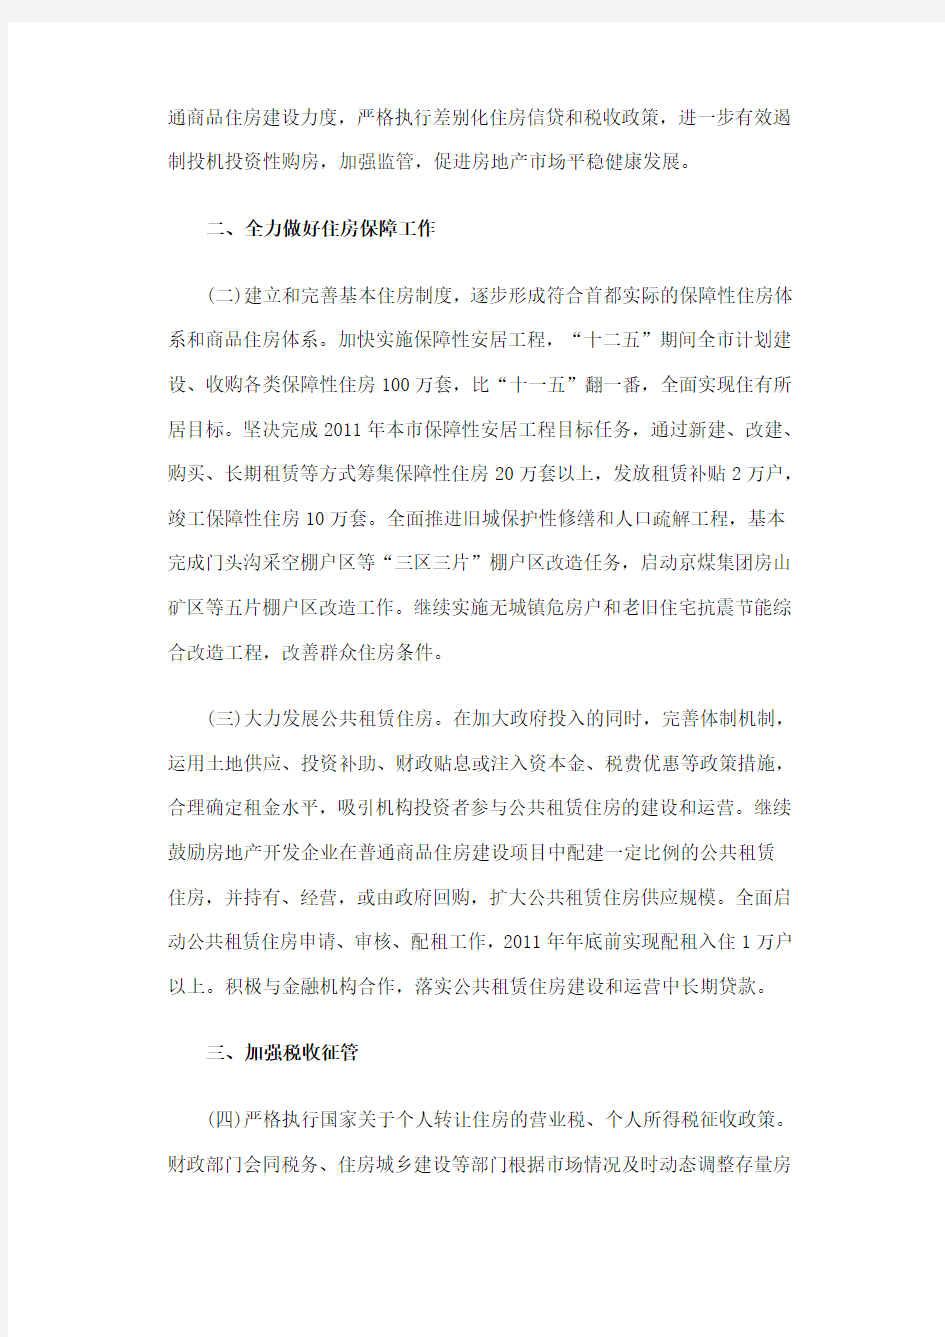 北京市进一步加强房地产市场调控工作的通知[2011]8号